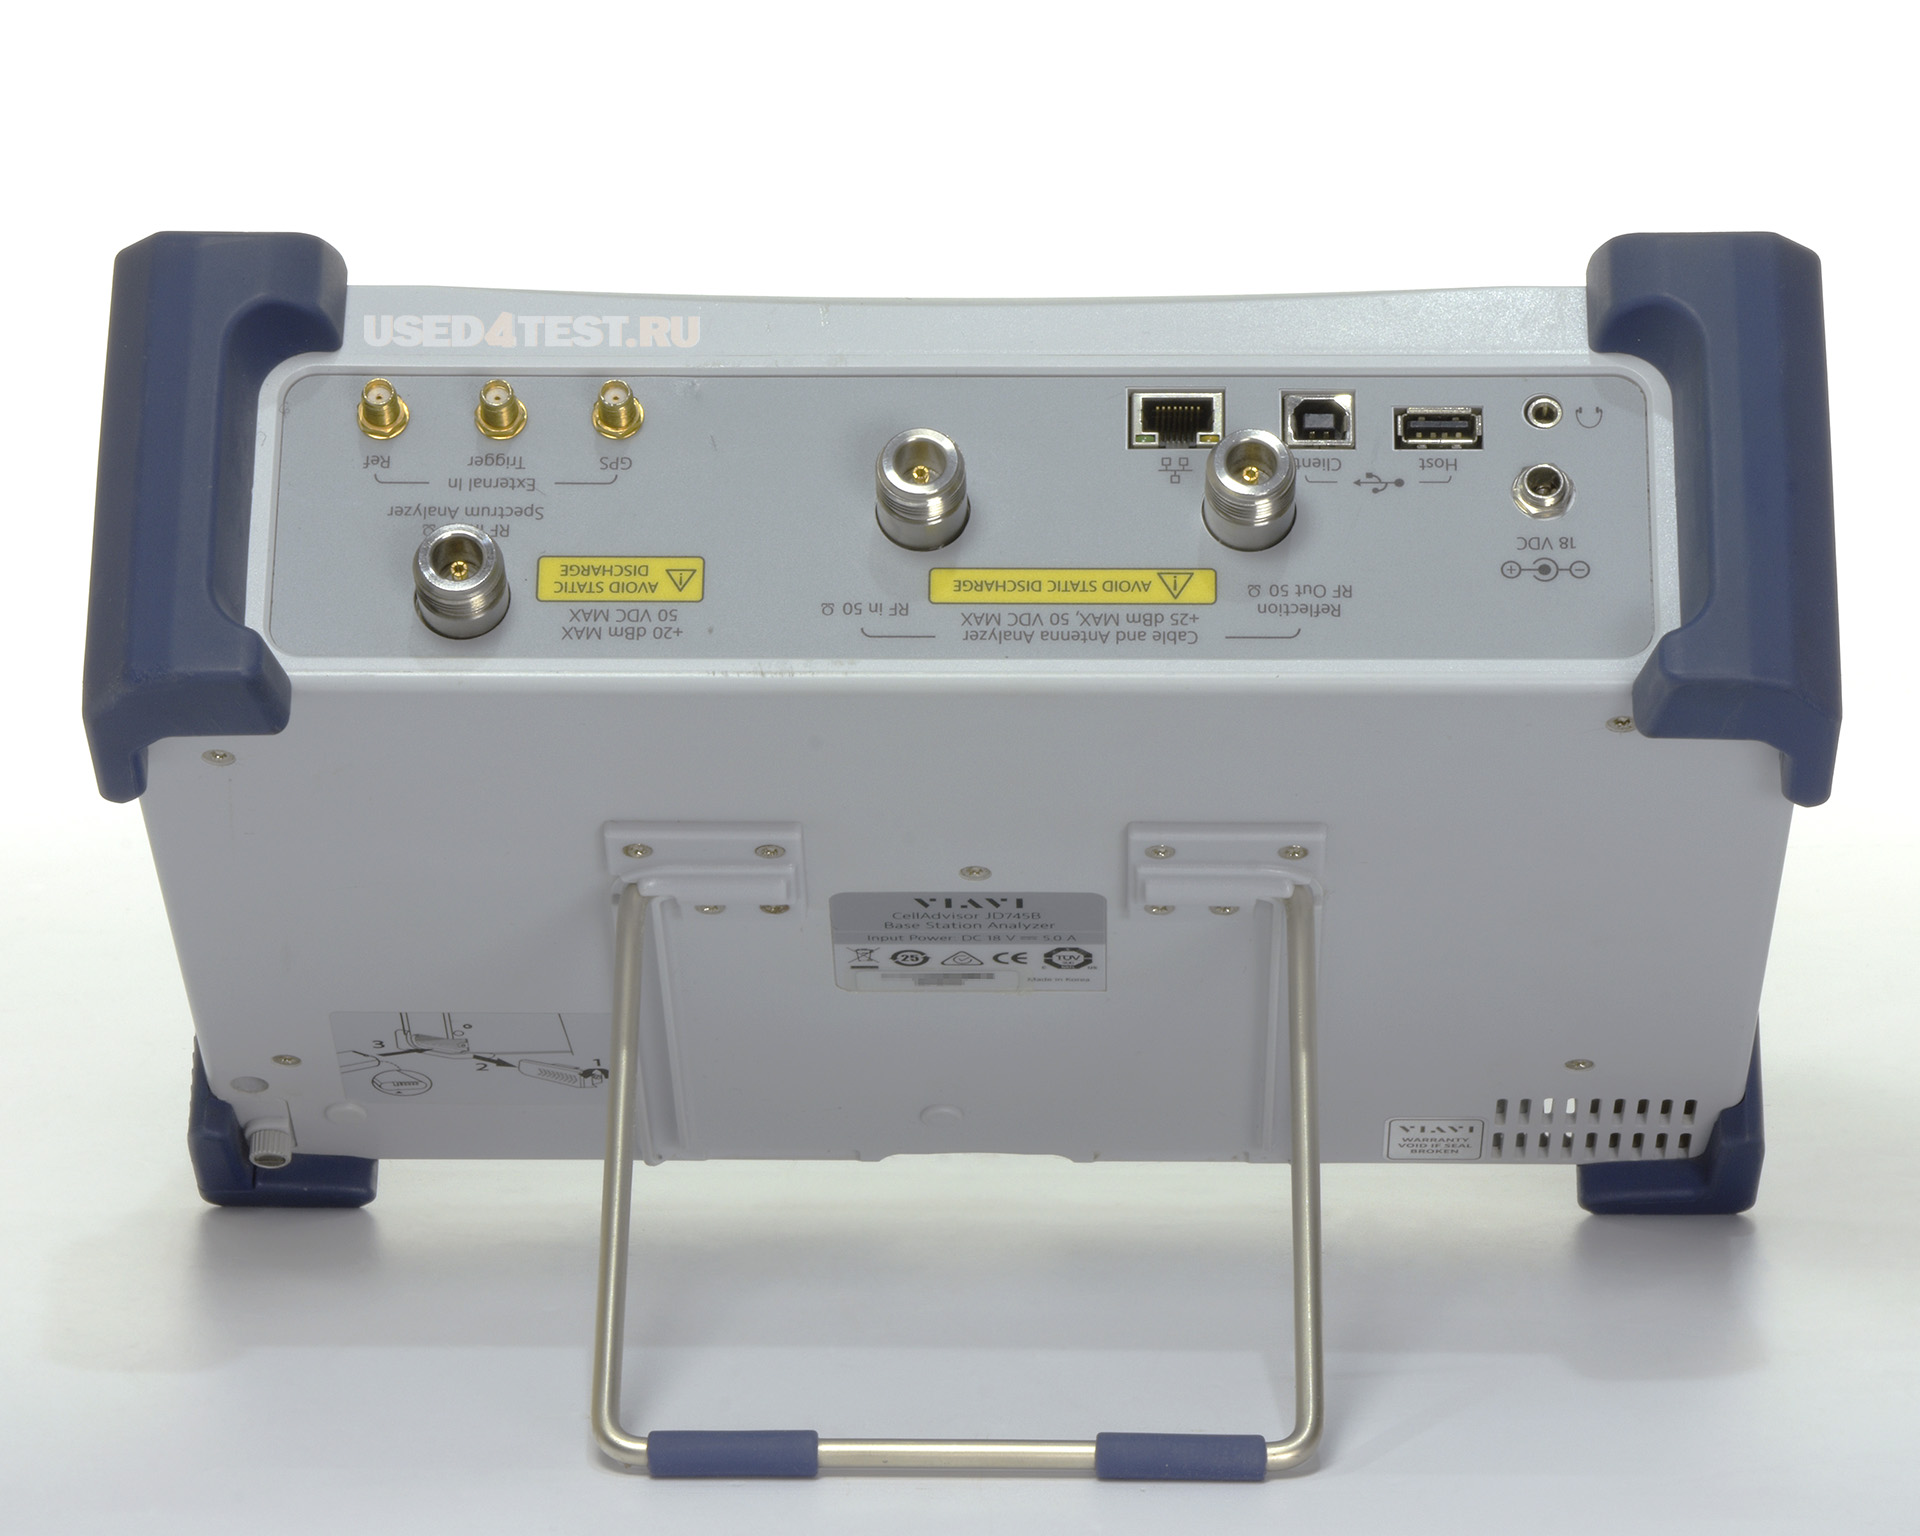 Анализатор базовых станций 
 VIAVI JD745B
 Анализатор спектра: 100 кГц - 4 ГГц

Анализатор АФУ: 5 МГц - 4 ГГц

Измеритель мощности: 10 МГц - 4 ГГц
 

 Стоимость указана в Рублях DDP Москва по безналичному расчету включая НДС 20%
